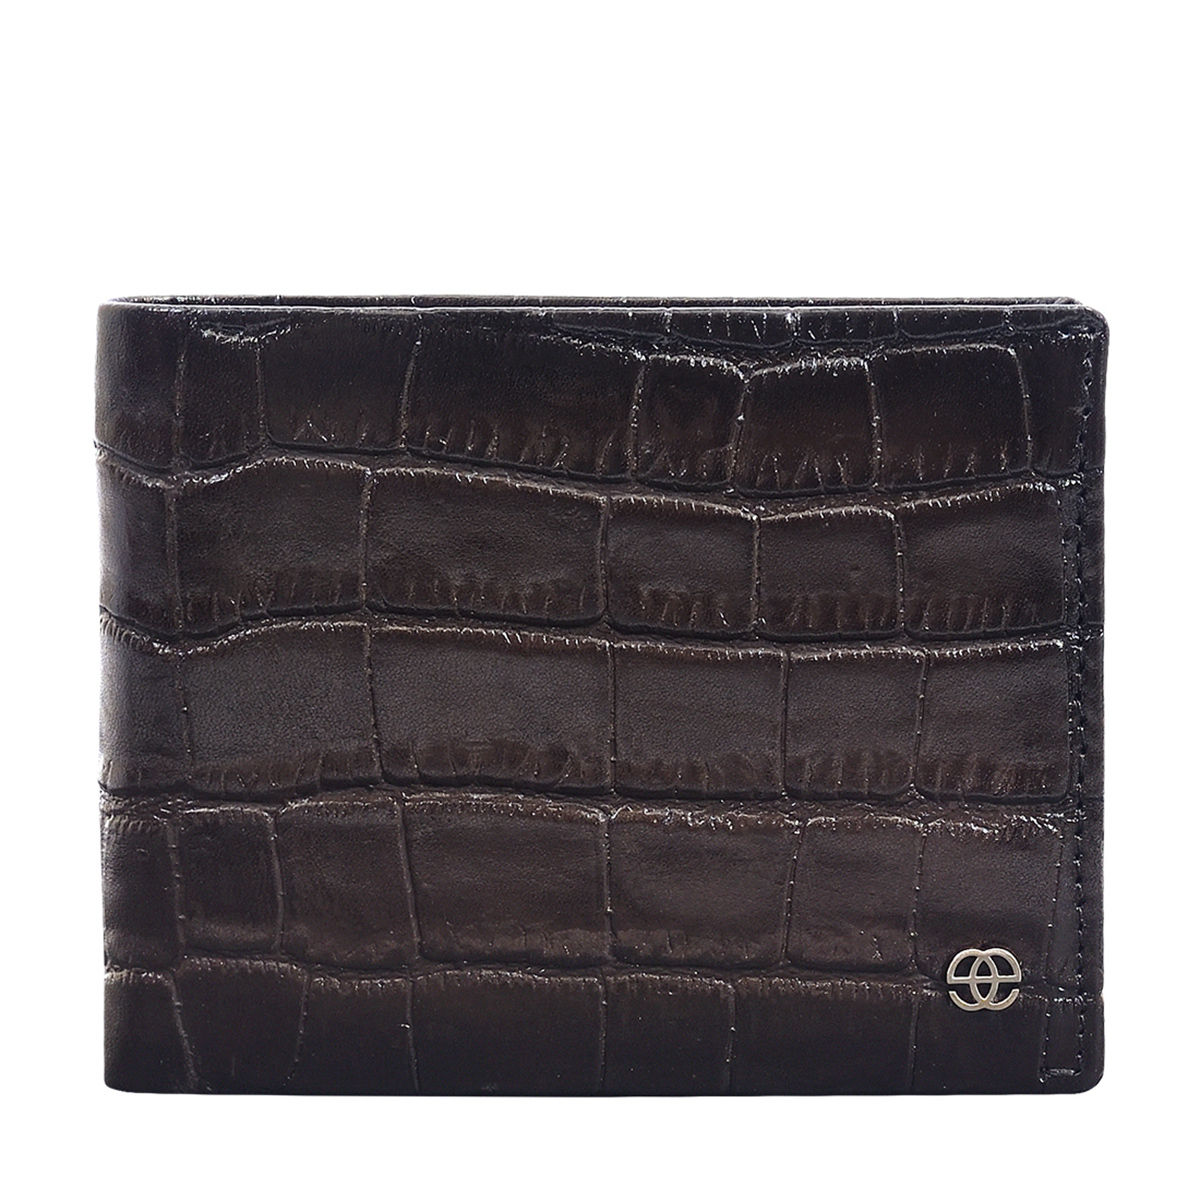 Eske Paris Santiago Leather Men's Wallet , Brown Croco